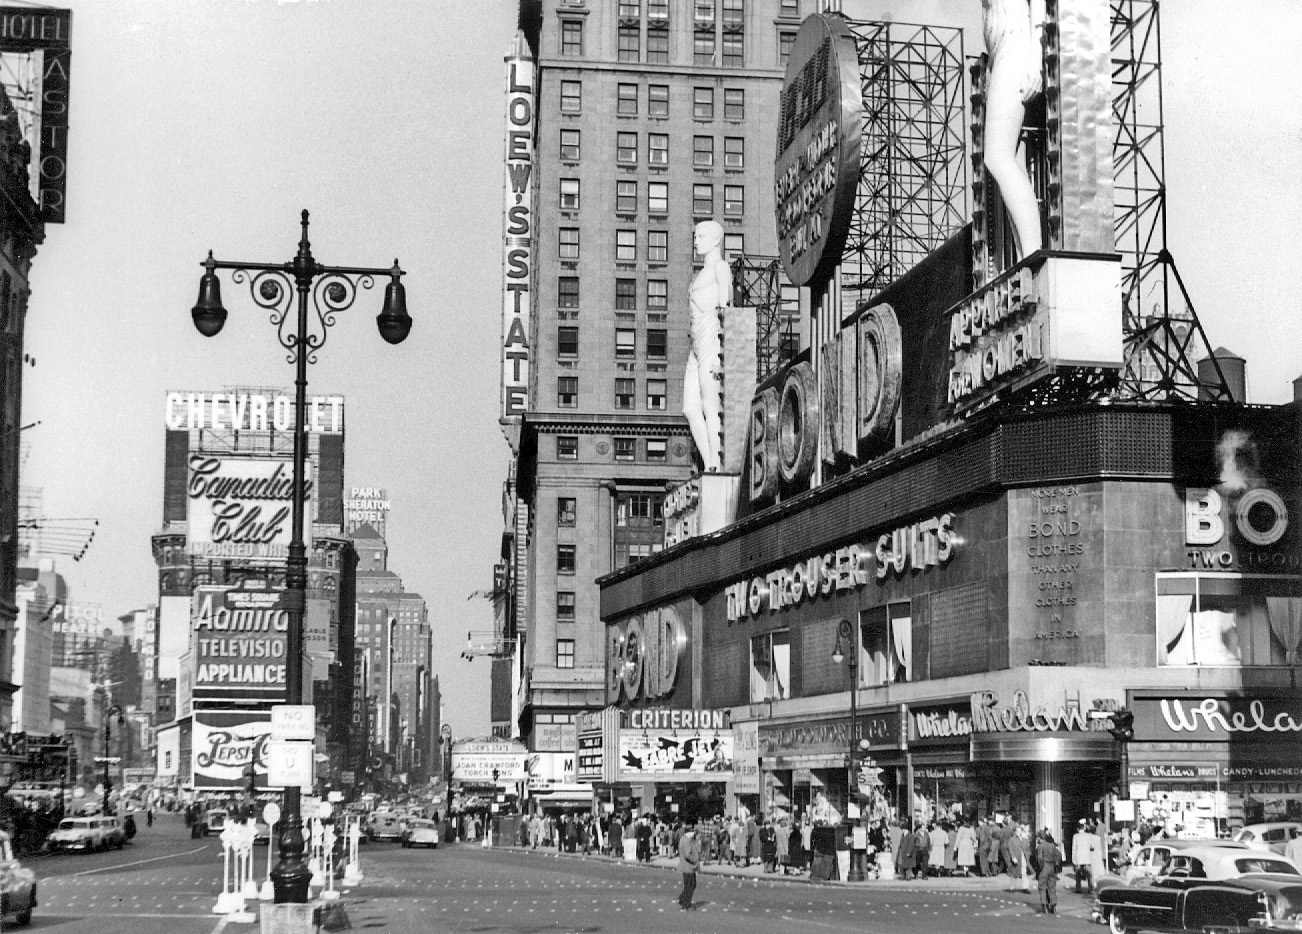 Taken in New York City on November 8, 1953 by Peter Jingeleski. View full size.